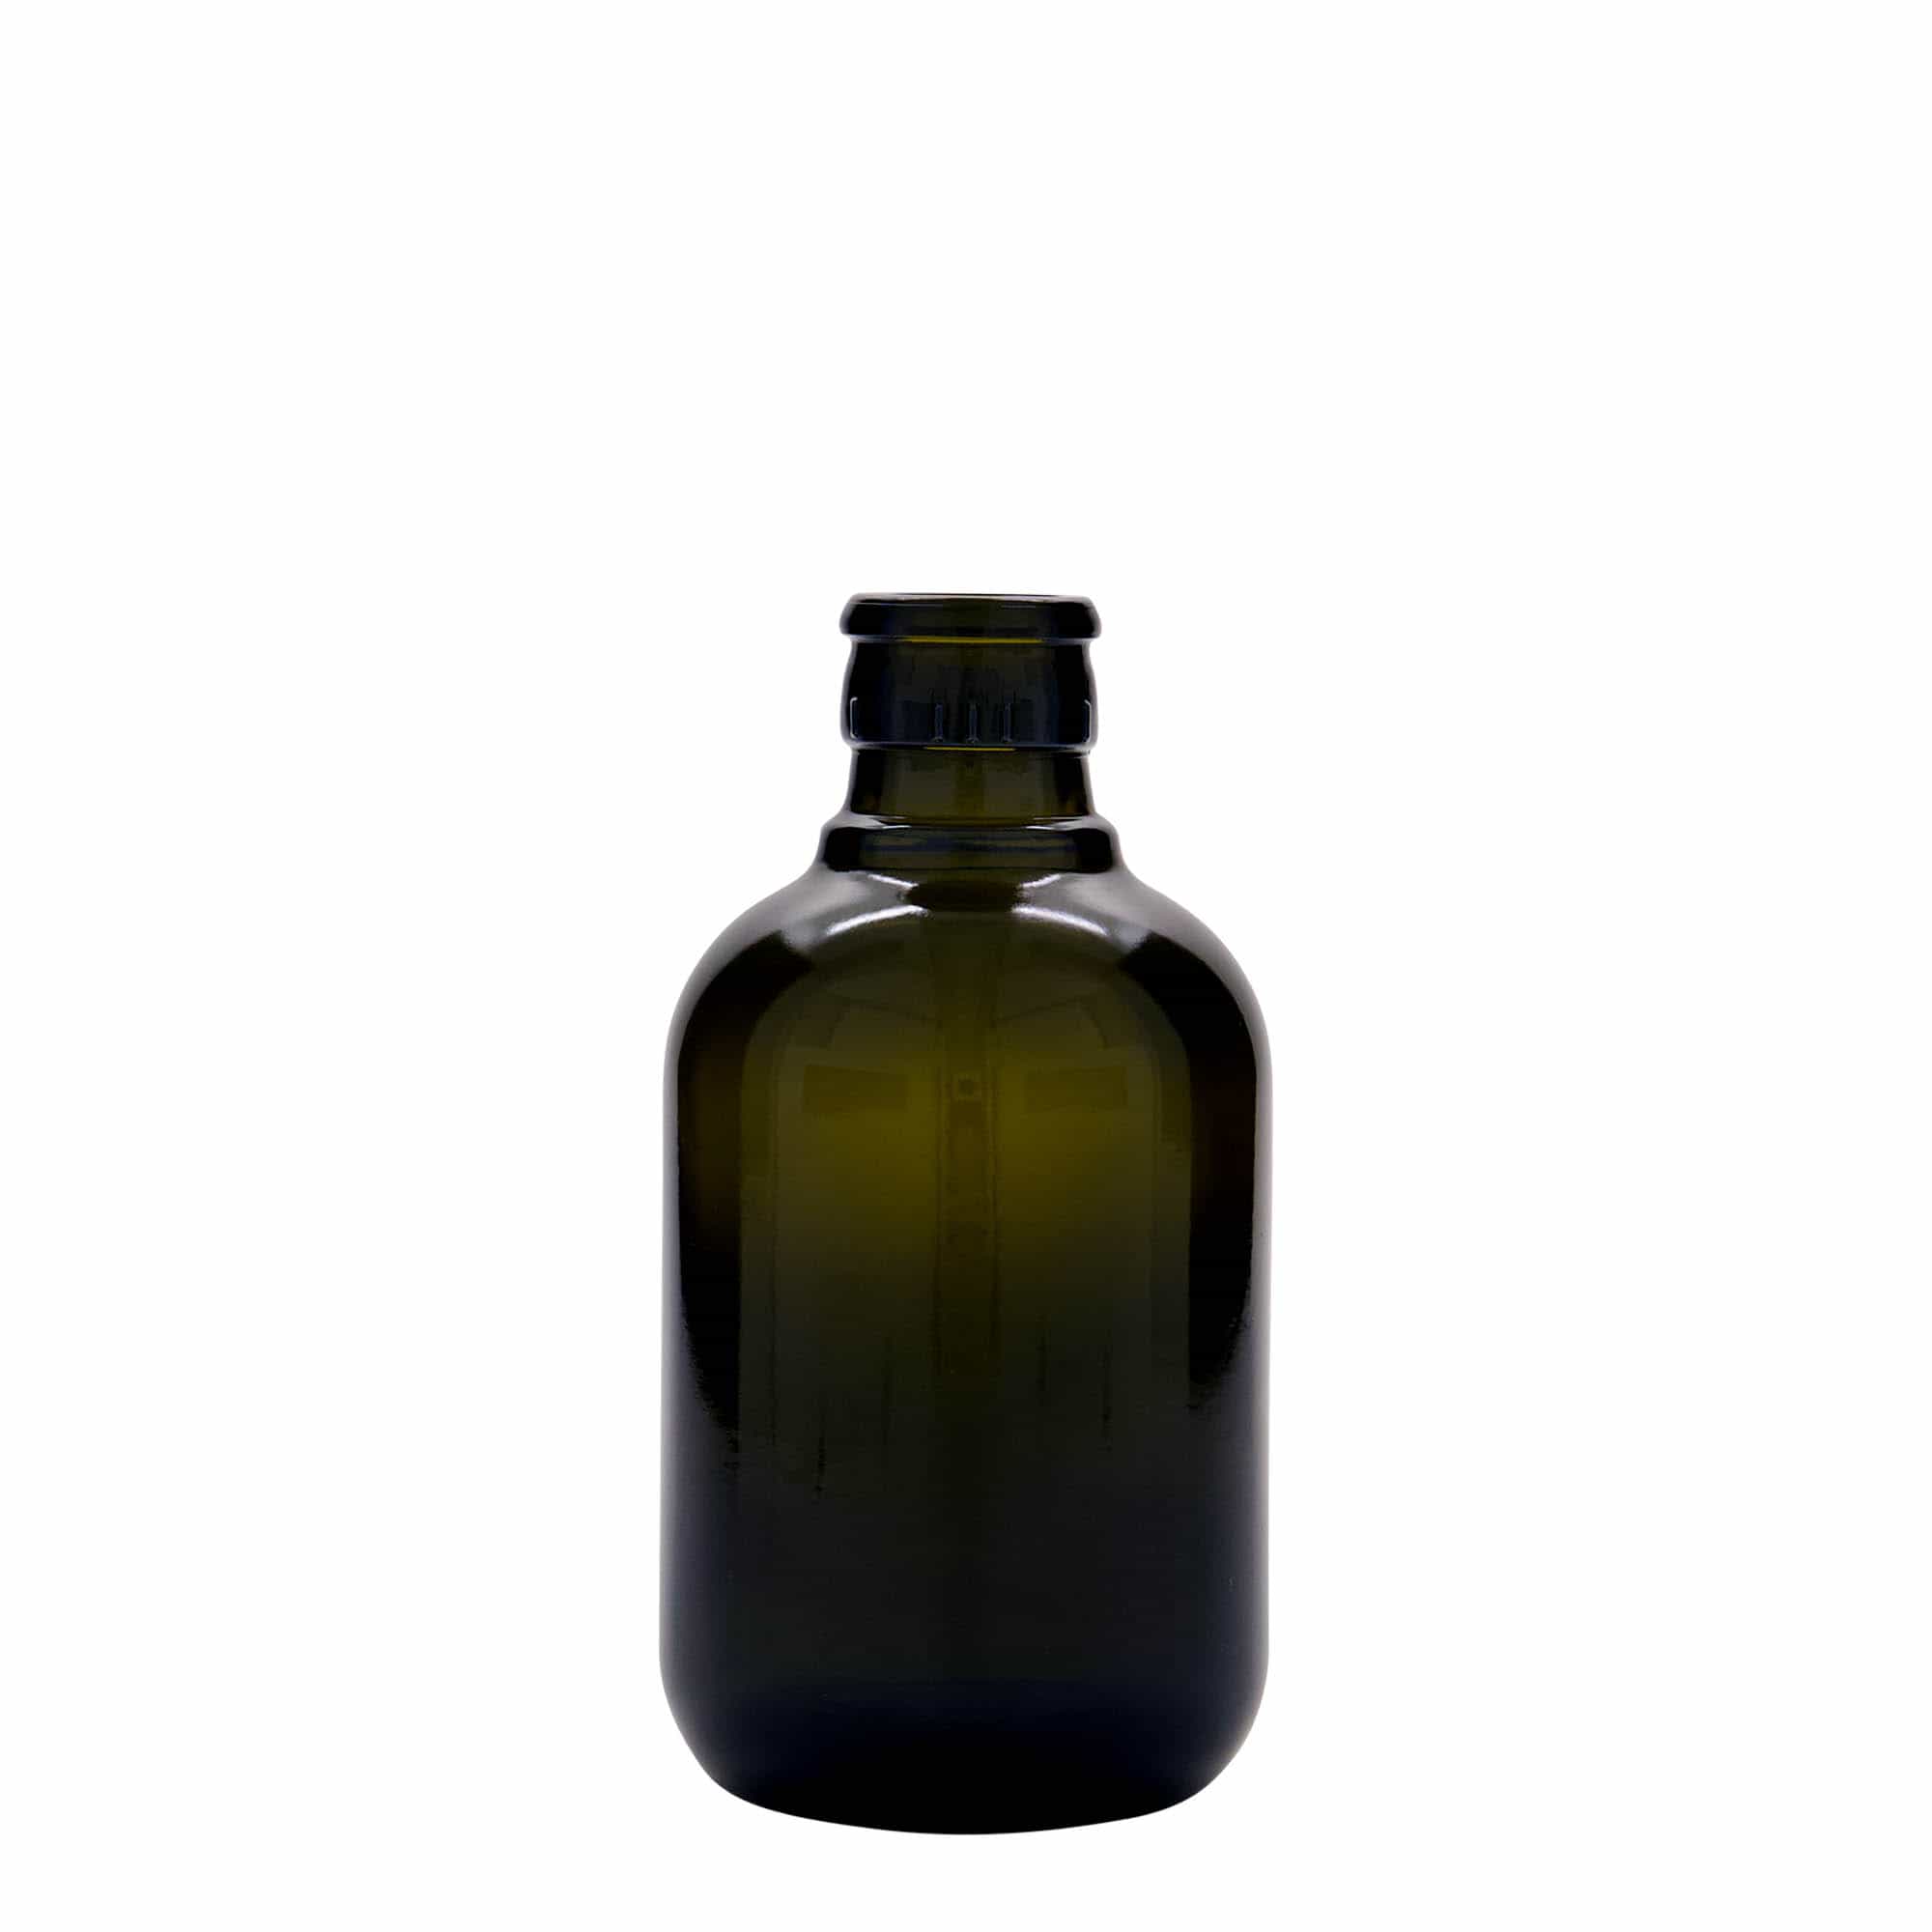 250 ml butelka na ocet/olej 'Biolio', szkło, kolor zielony antyczny, zamknięcie: DOP